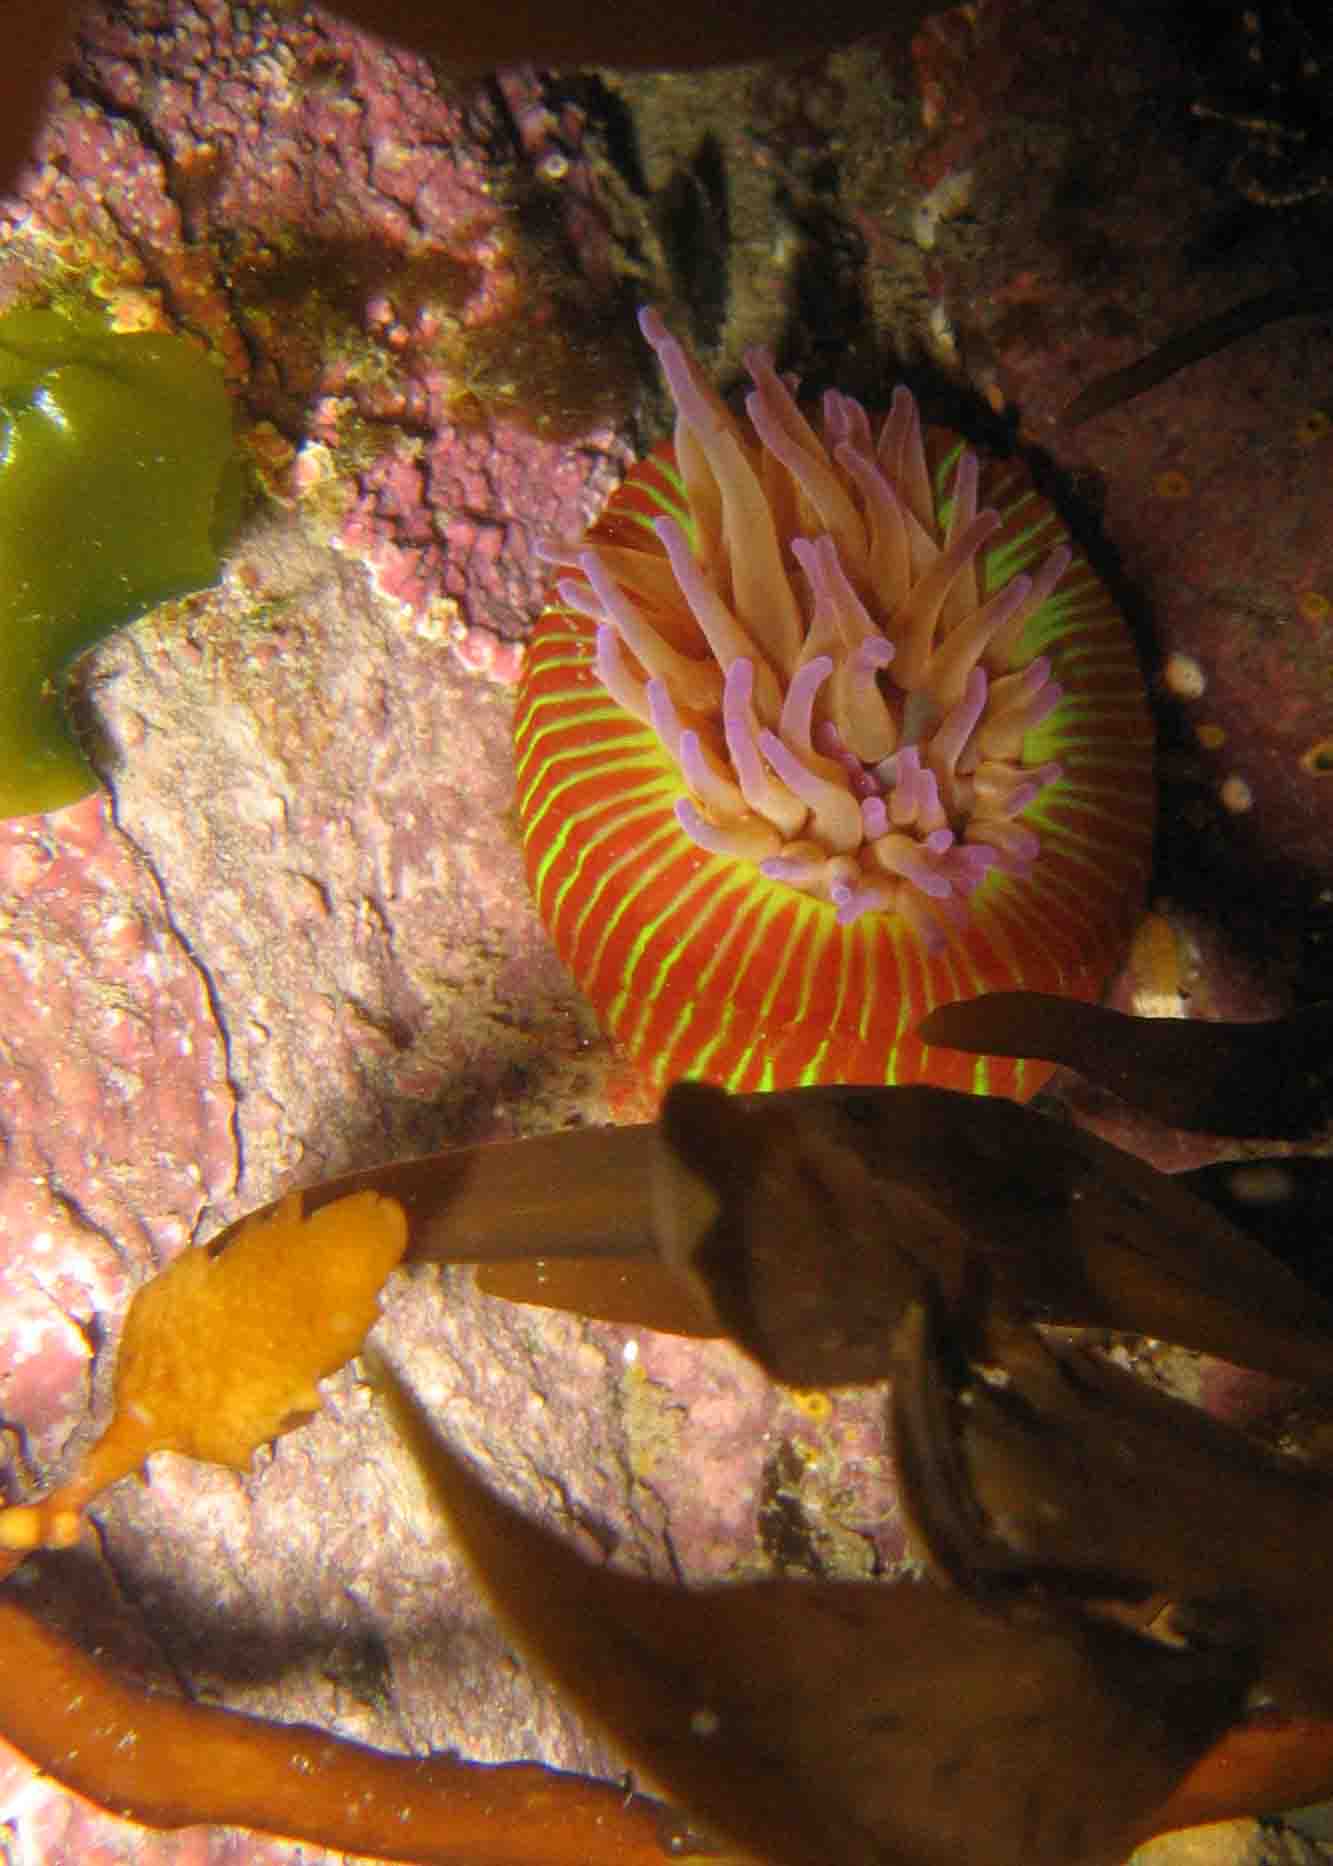 wandering anemone